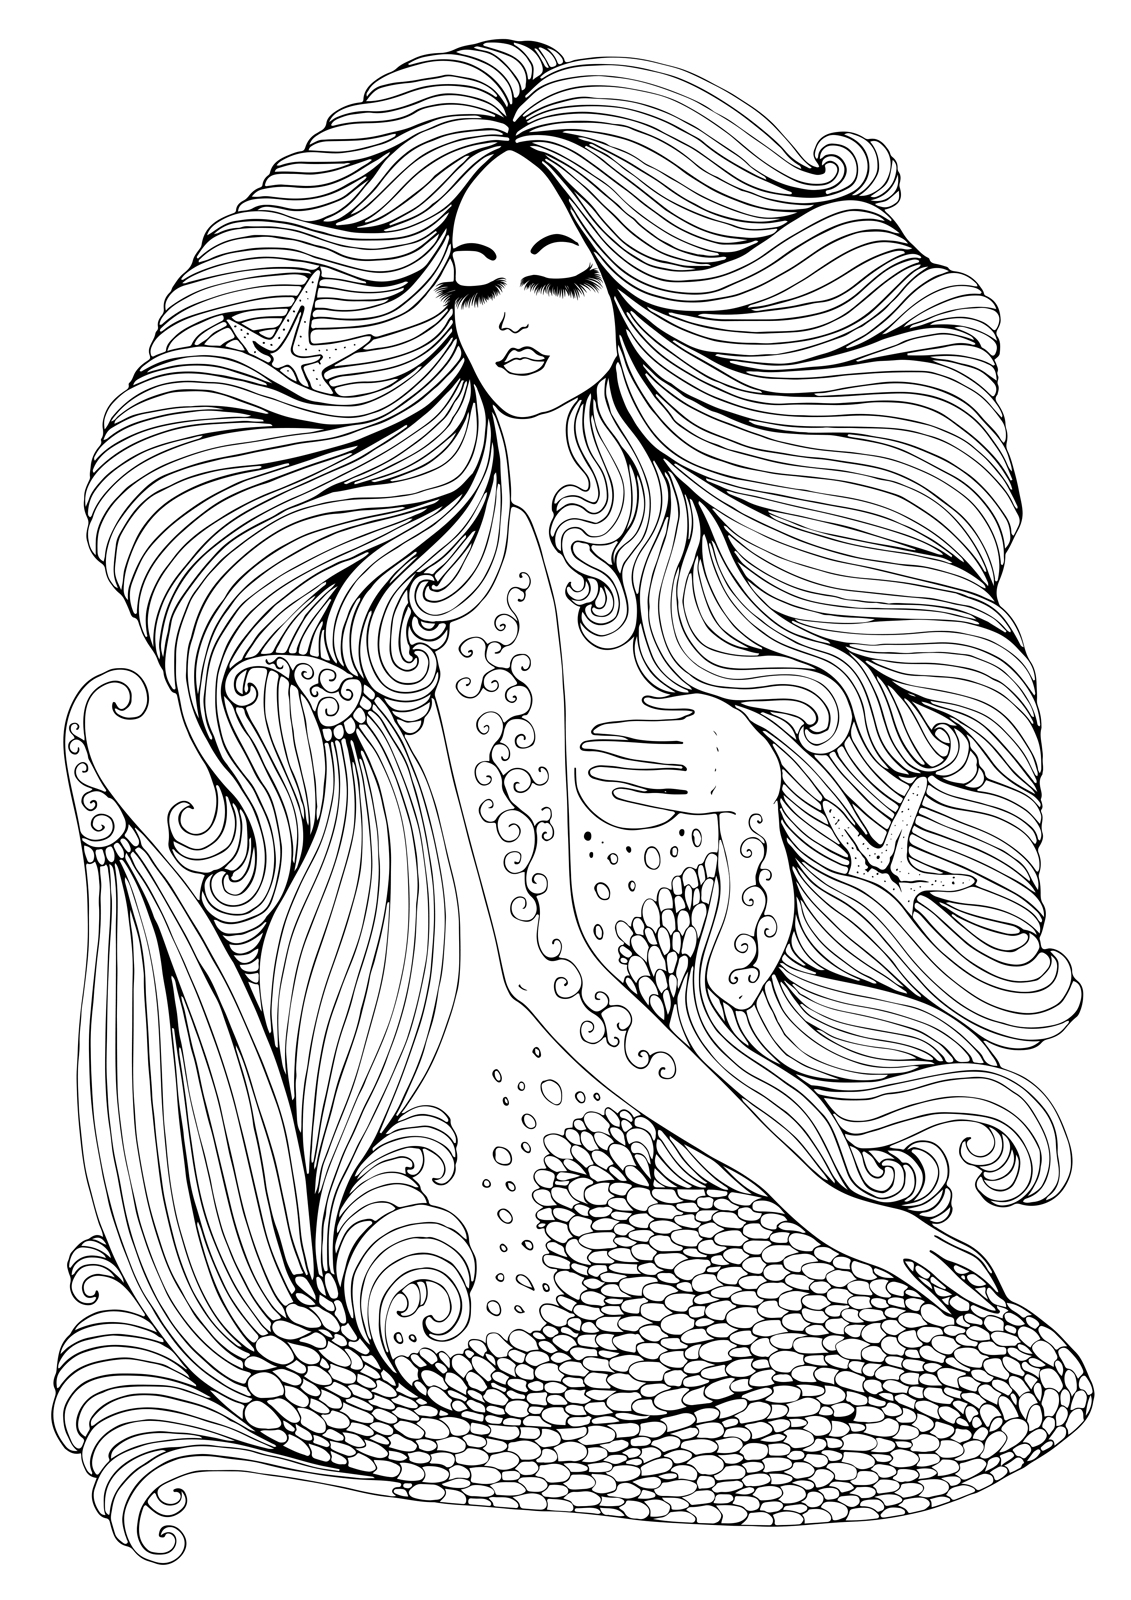 Mermaids | Elemental Beings